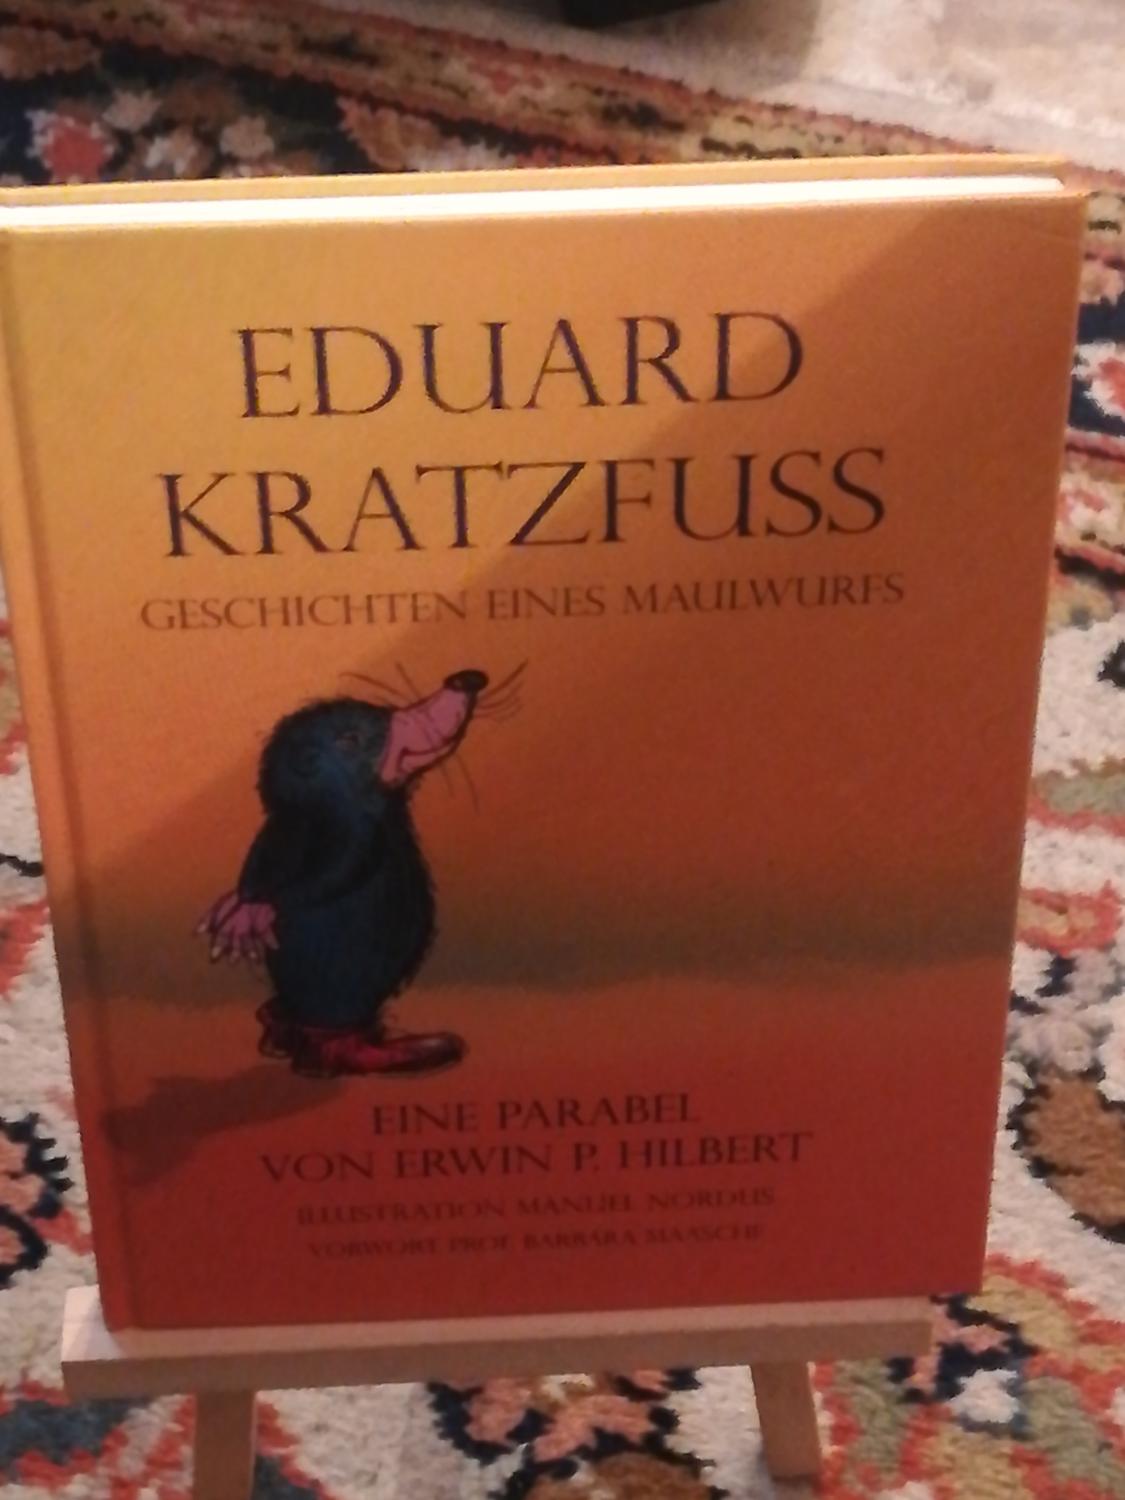 Eduard Kratzfuss, Geschichten eines Maulwurfs - Hilbert Erwin P.